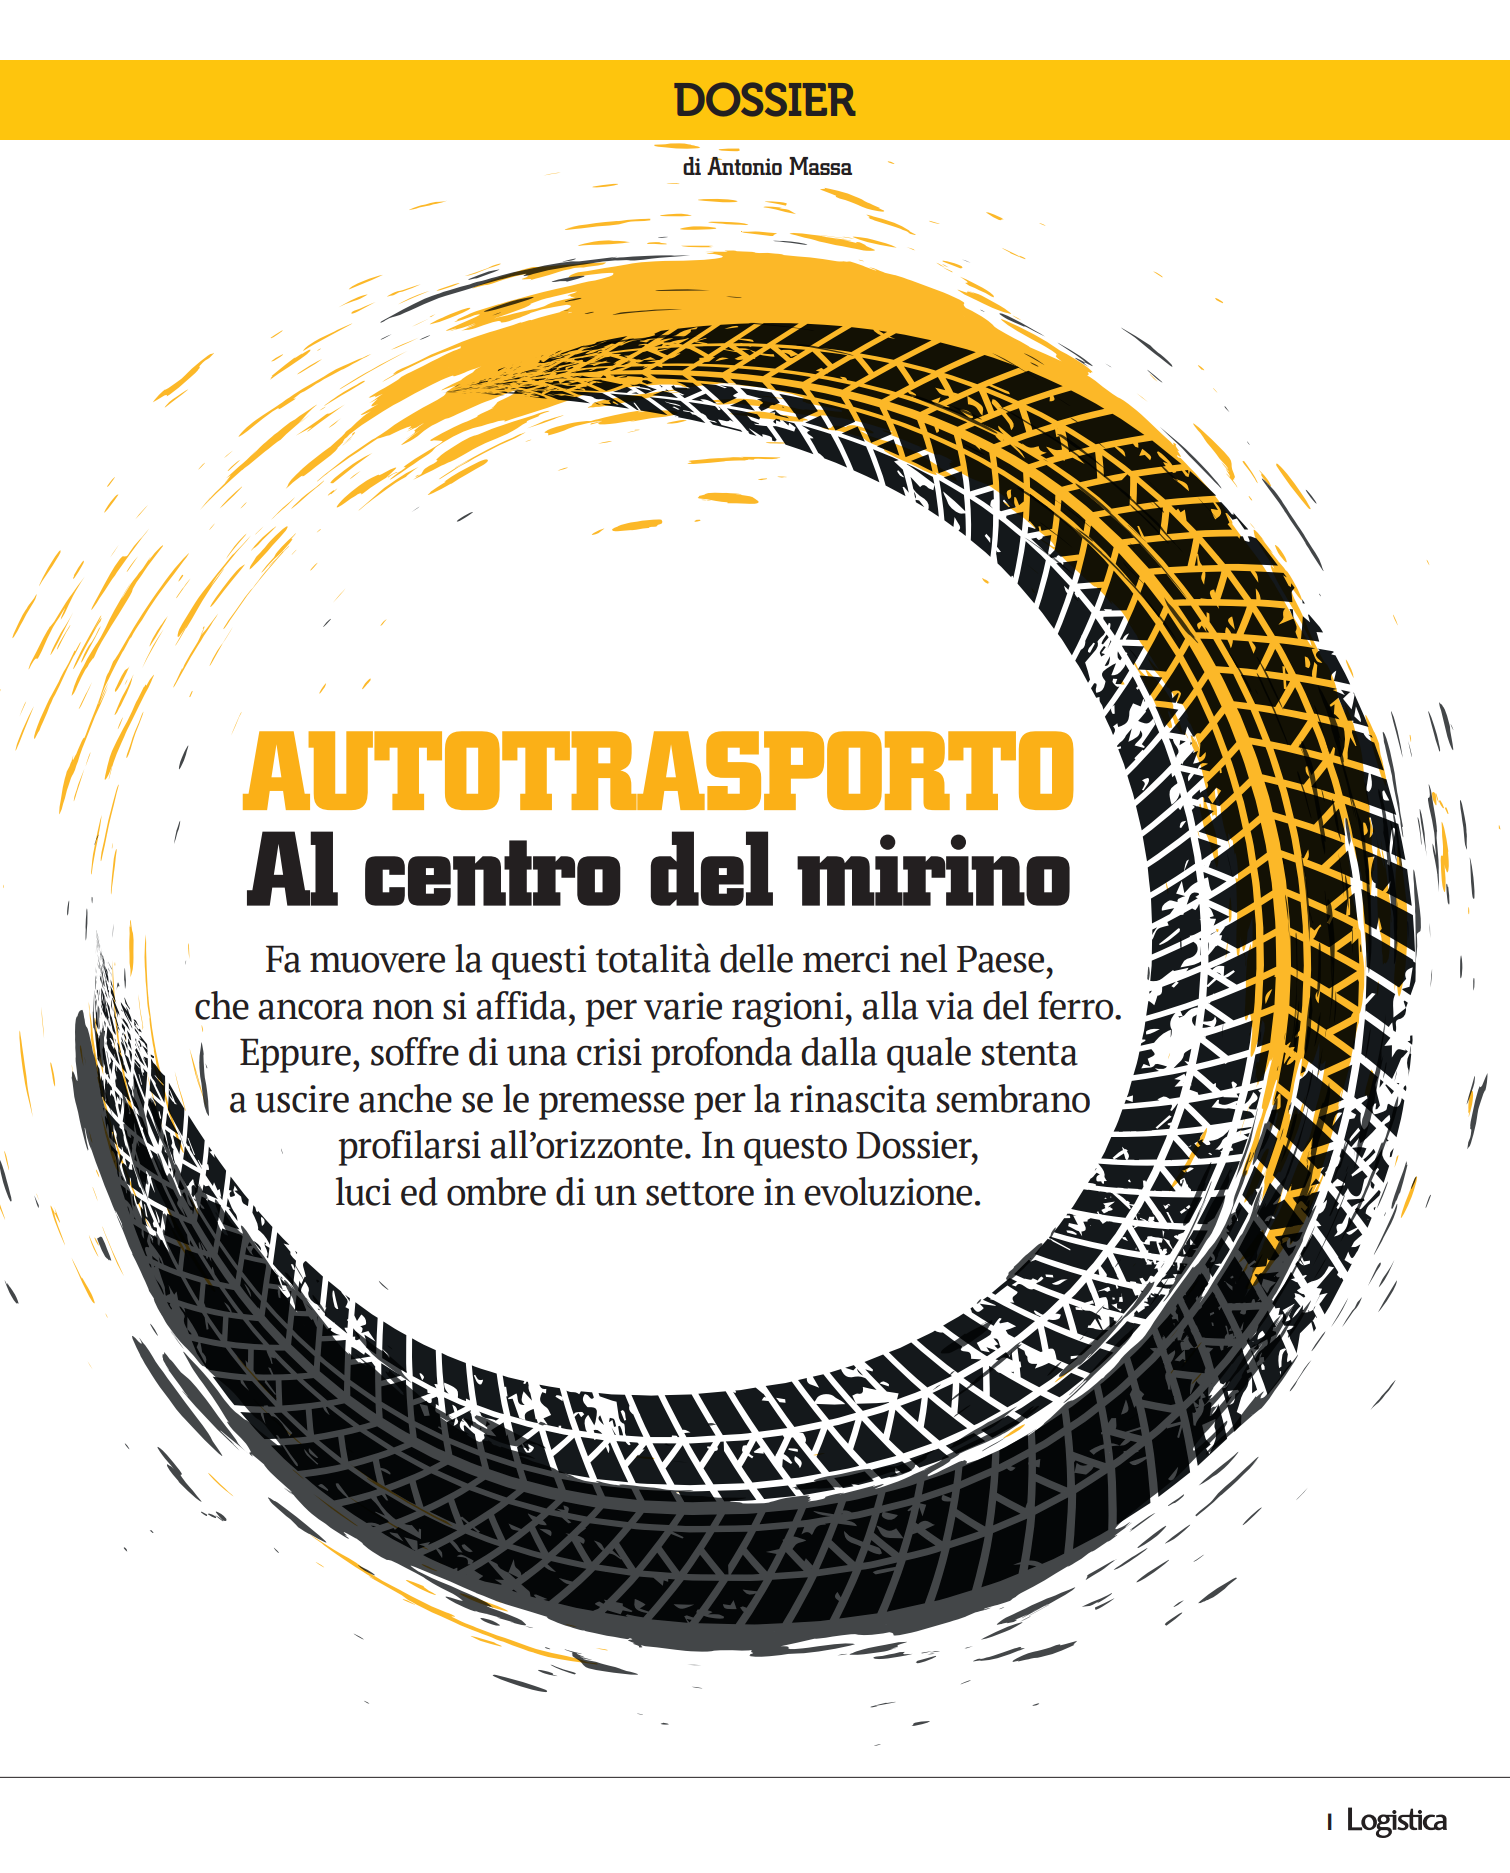 Cover_Logistica_autotrasporto